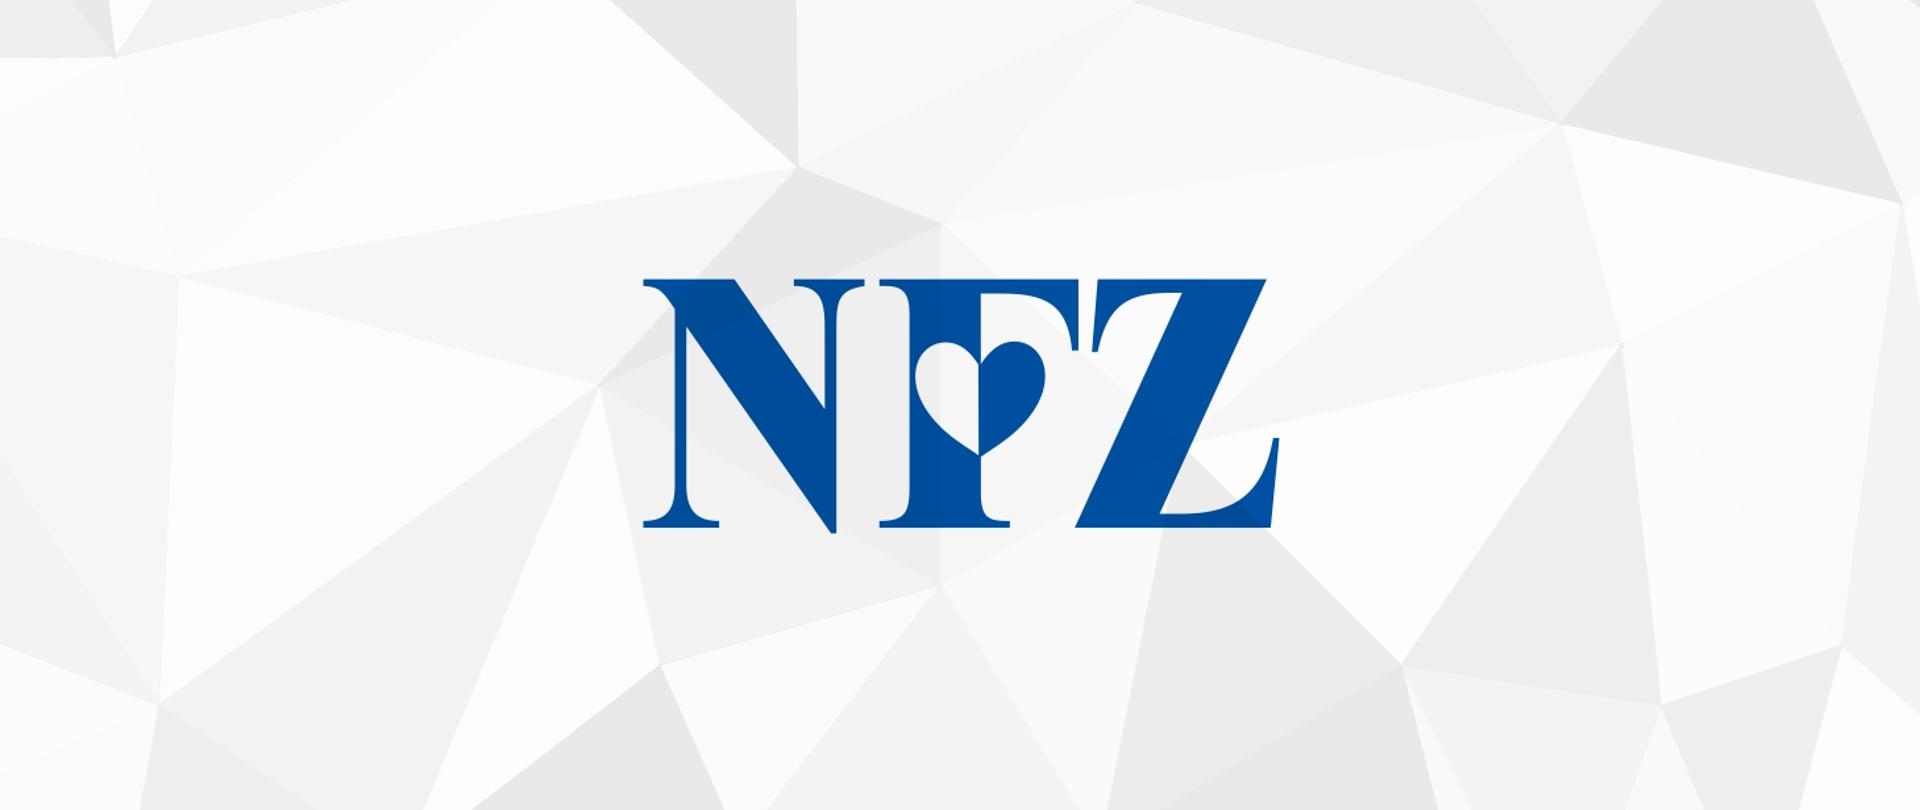 Grafika przedstawia logo Narodowego Funduszu Zdrowia w postaci niebieskich liter NFZ. W literę F wbudowane jest serce. Logo znajduje się na tle złożonych z trójkątów w odcieniach szarości.